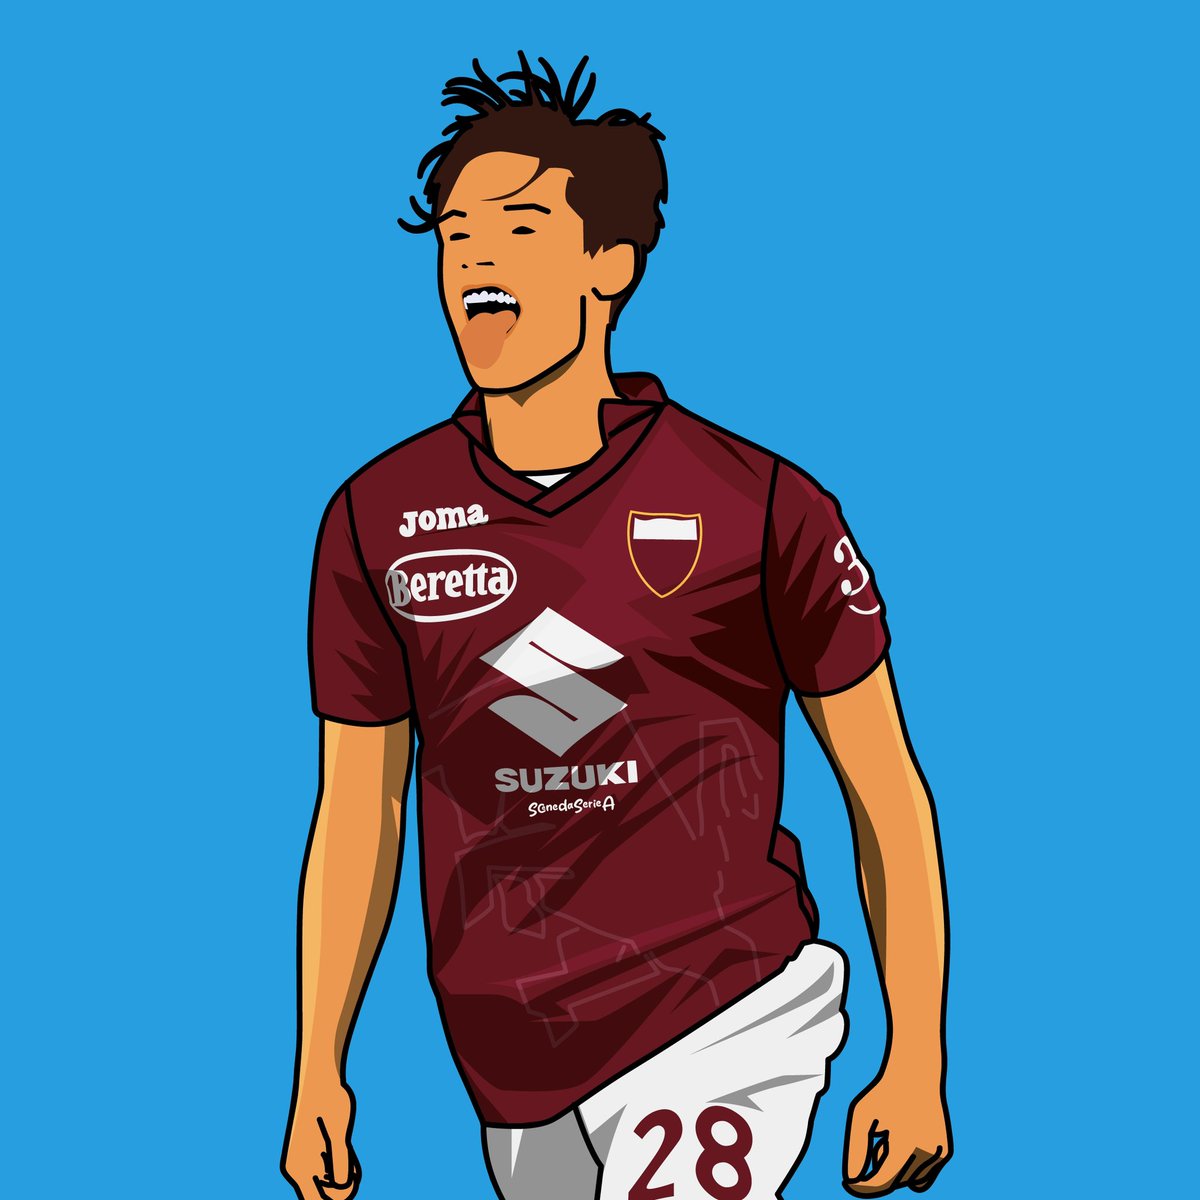 Buona domenica a tutti quelli che possono ammirare questo giocatore con la maglia della propria squadra 🐂

🎨 @ScenedaserieaA x @Toro_News 

#Ricci 
#TorinoFC